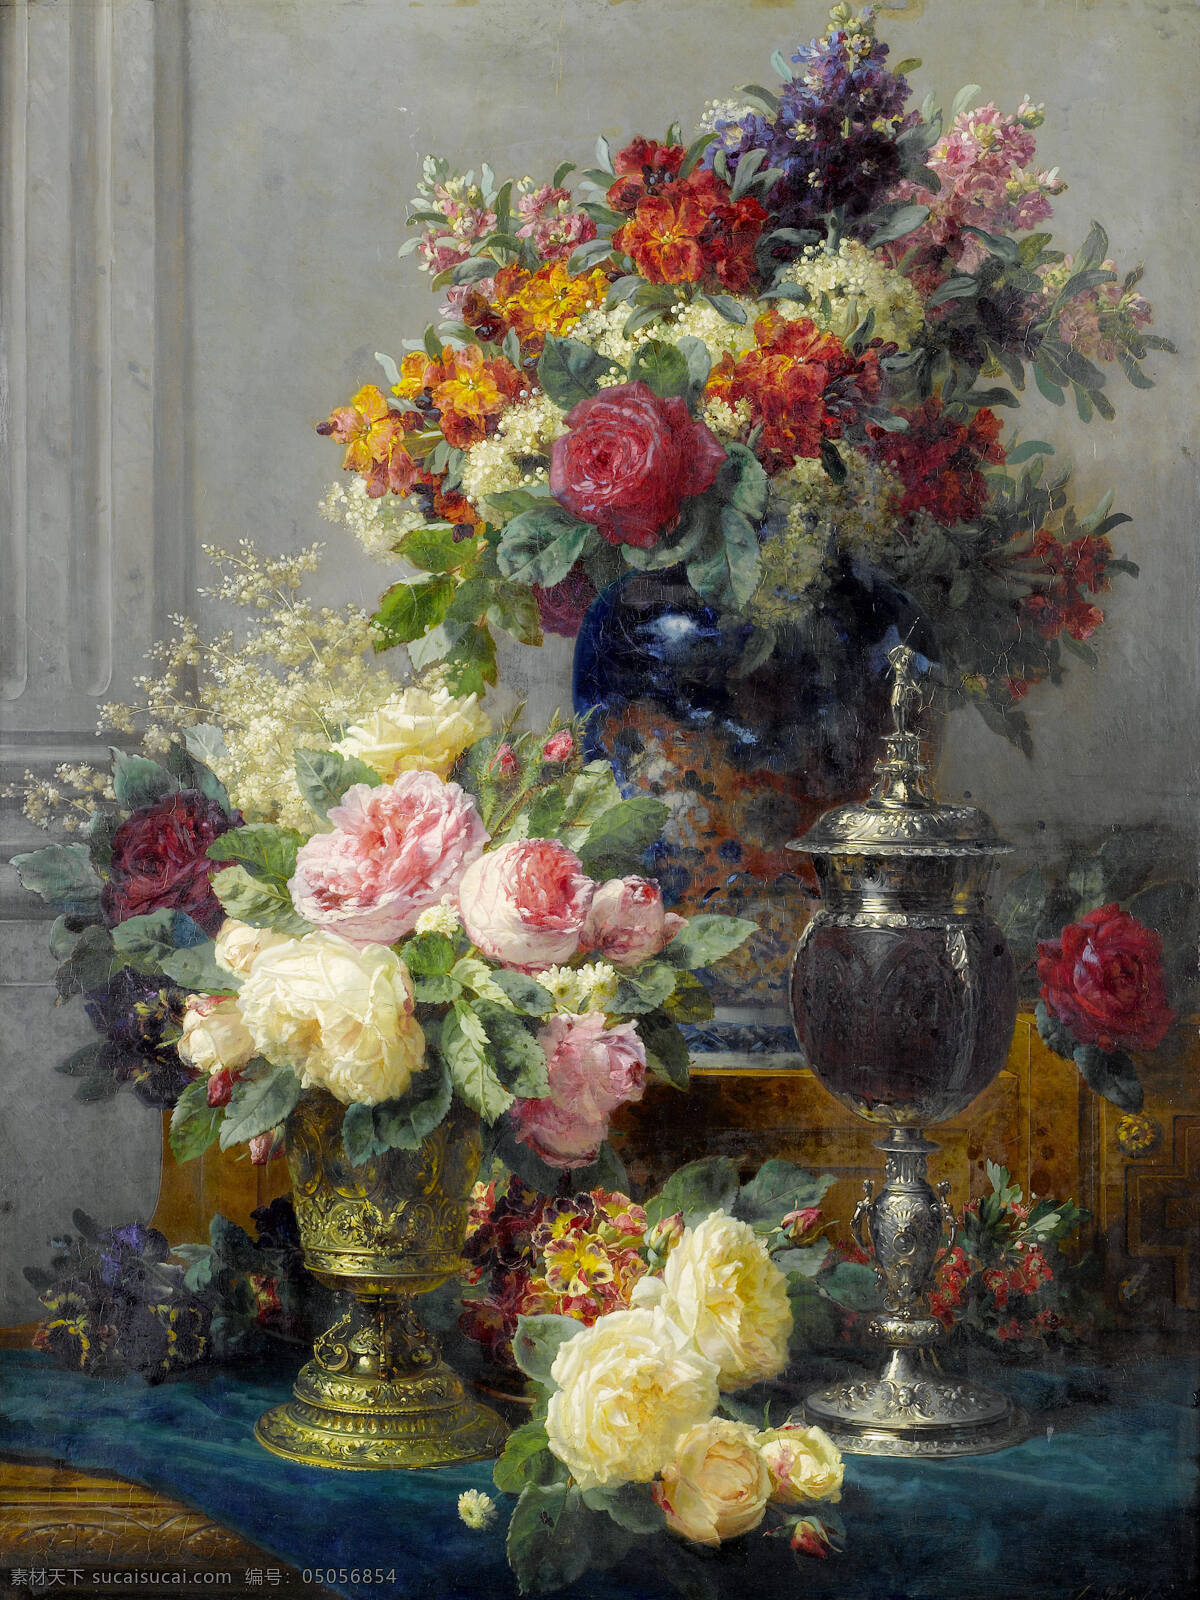 静物鲜花 混搭鲜花 永恒之美 金器 花瓶 深蓝色桌布 19世纪油画 油画 绘画书法 文化艺术